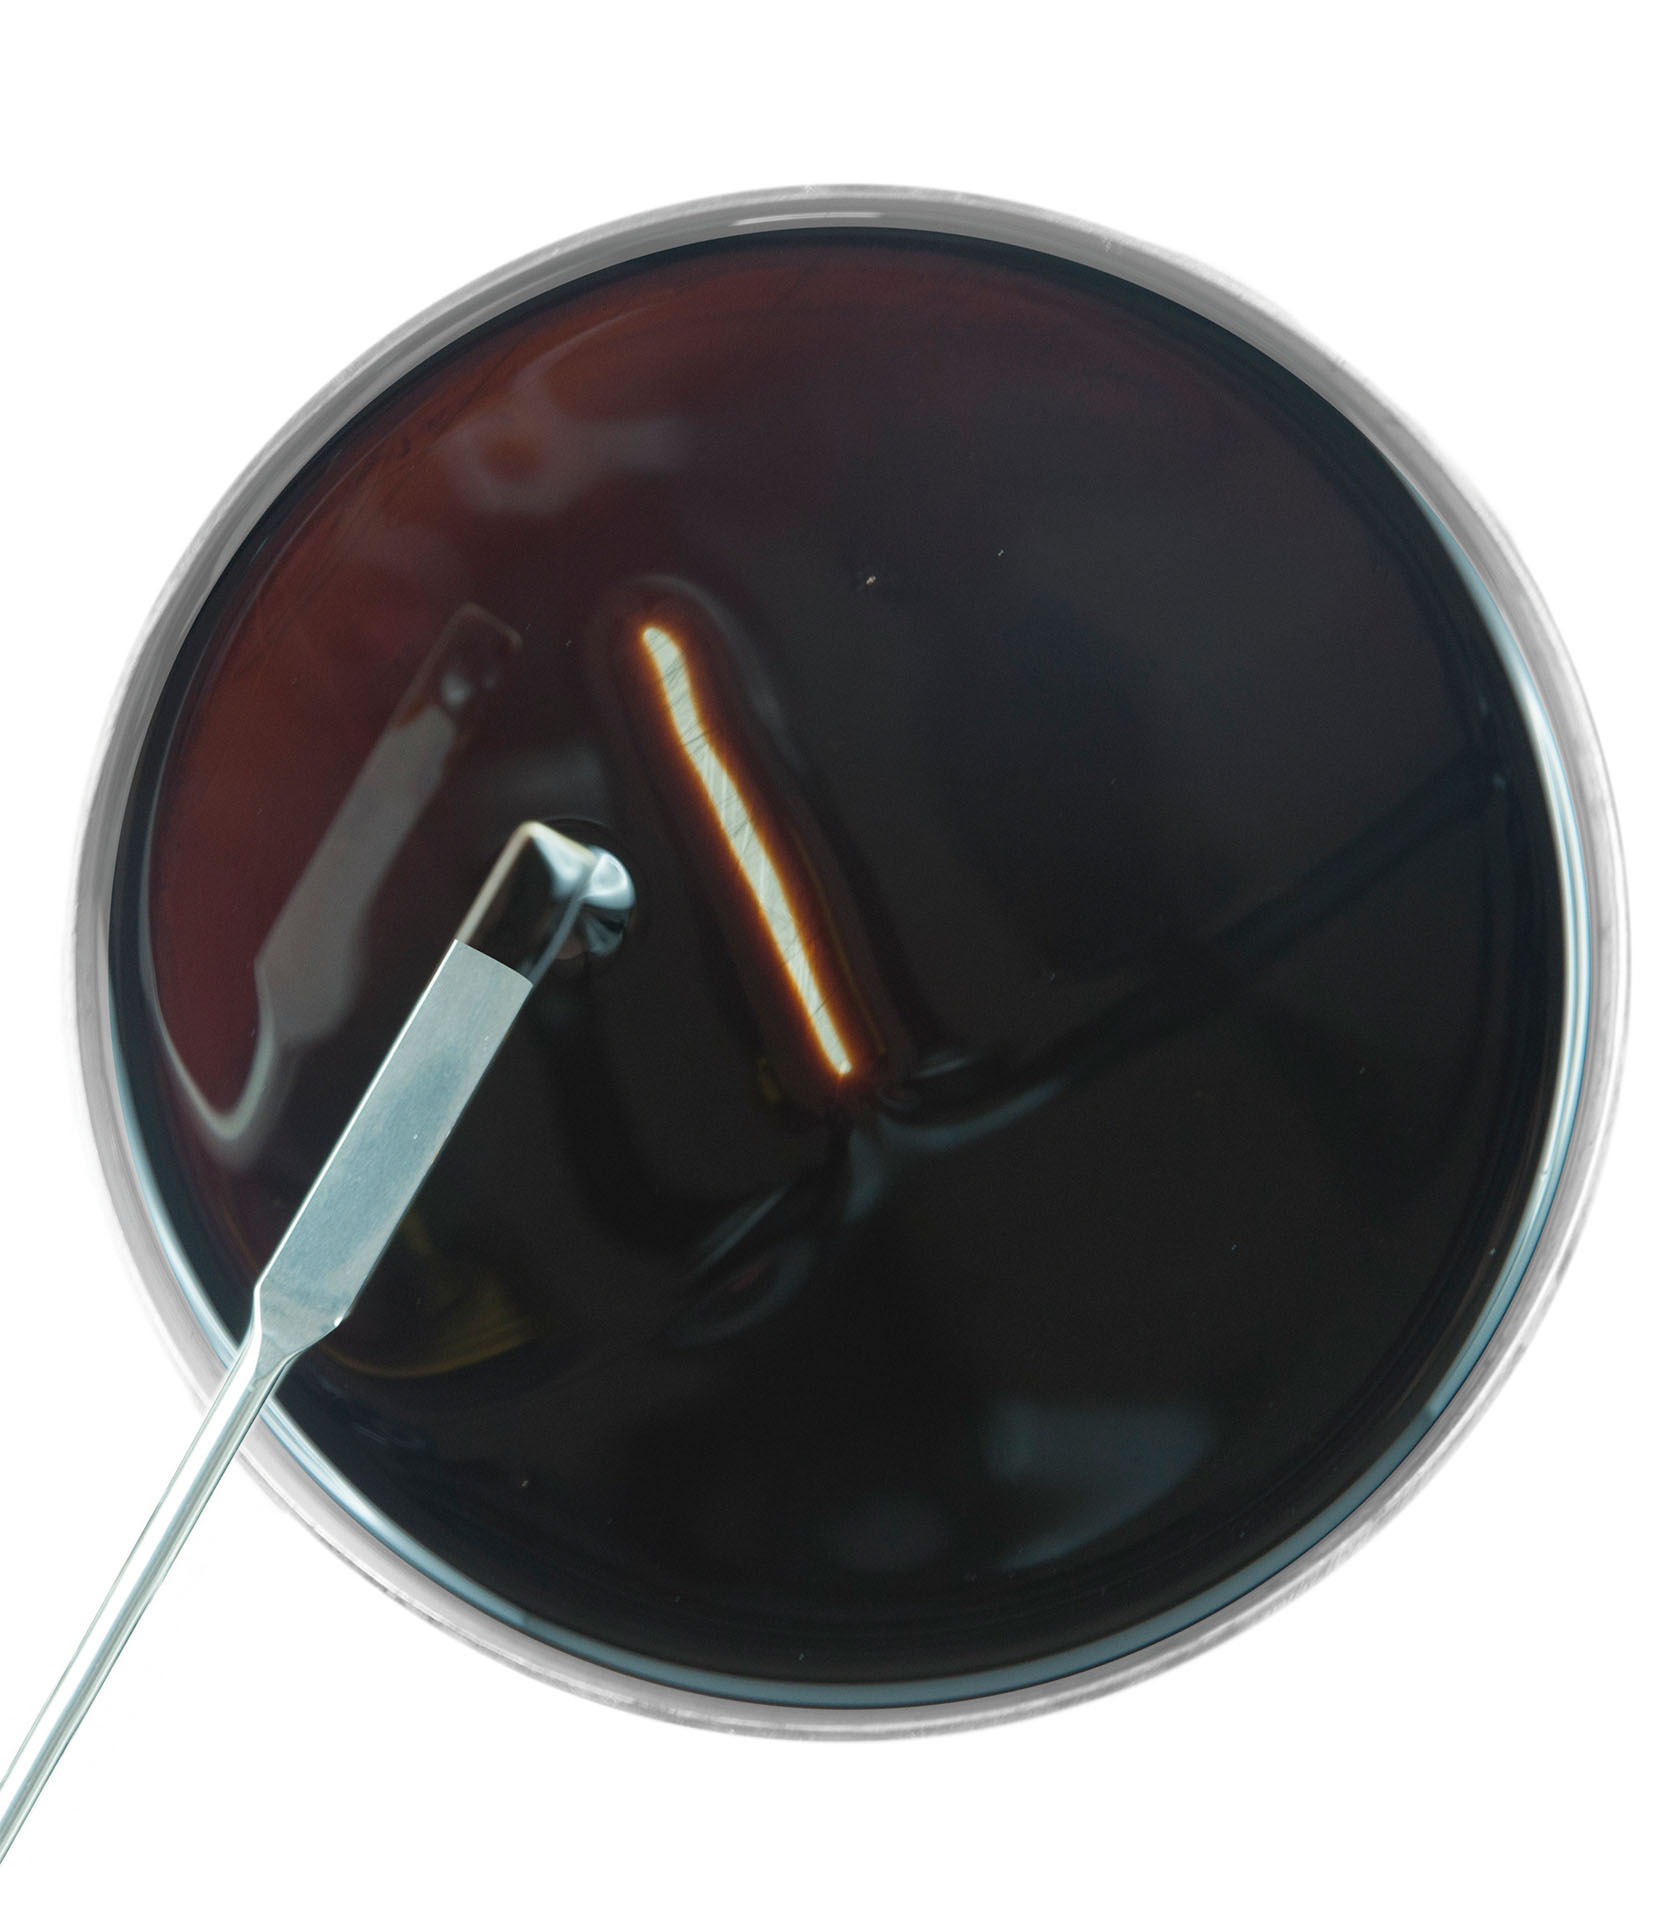 Aceite lubricante líquido en una placa de Petri